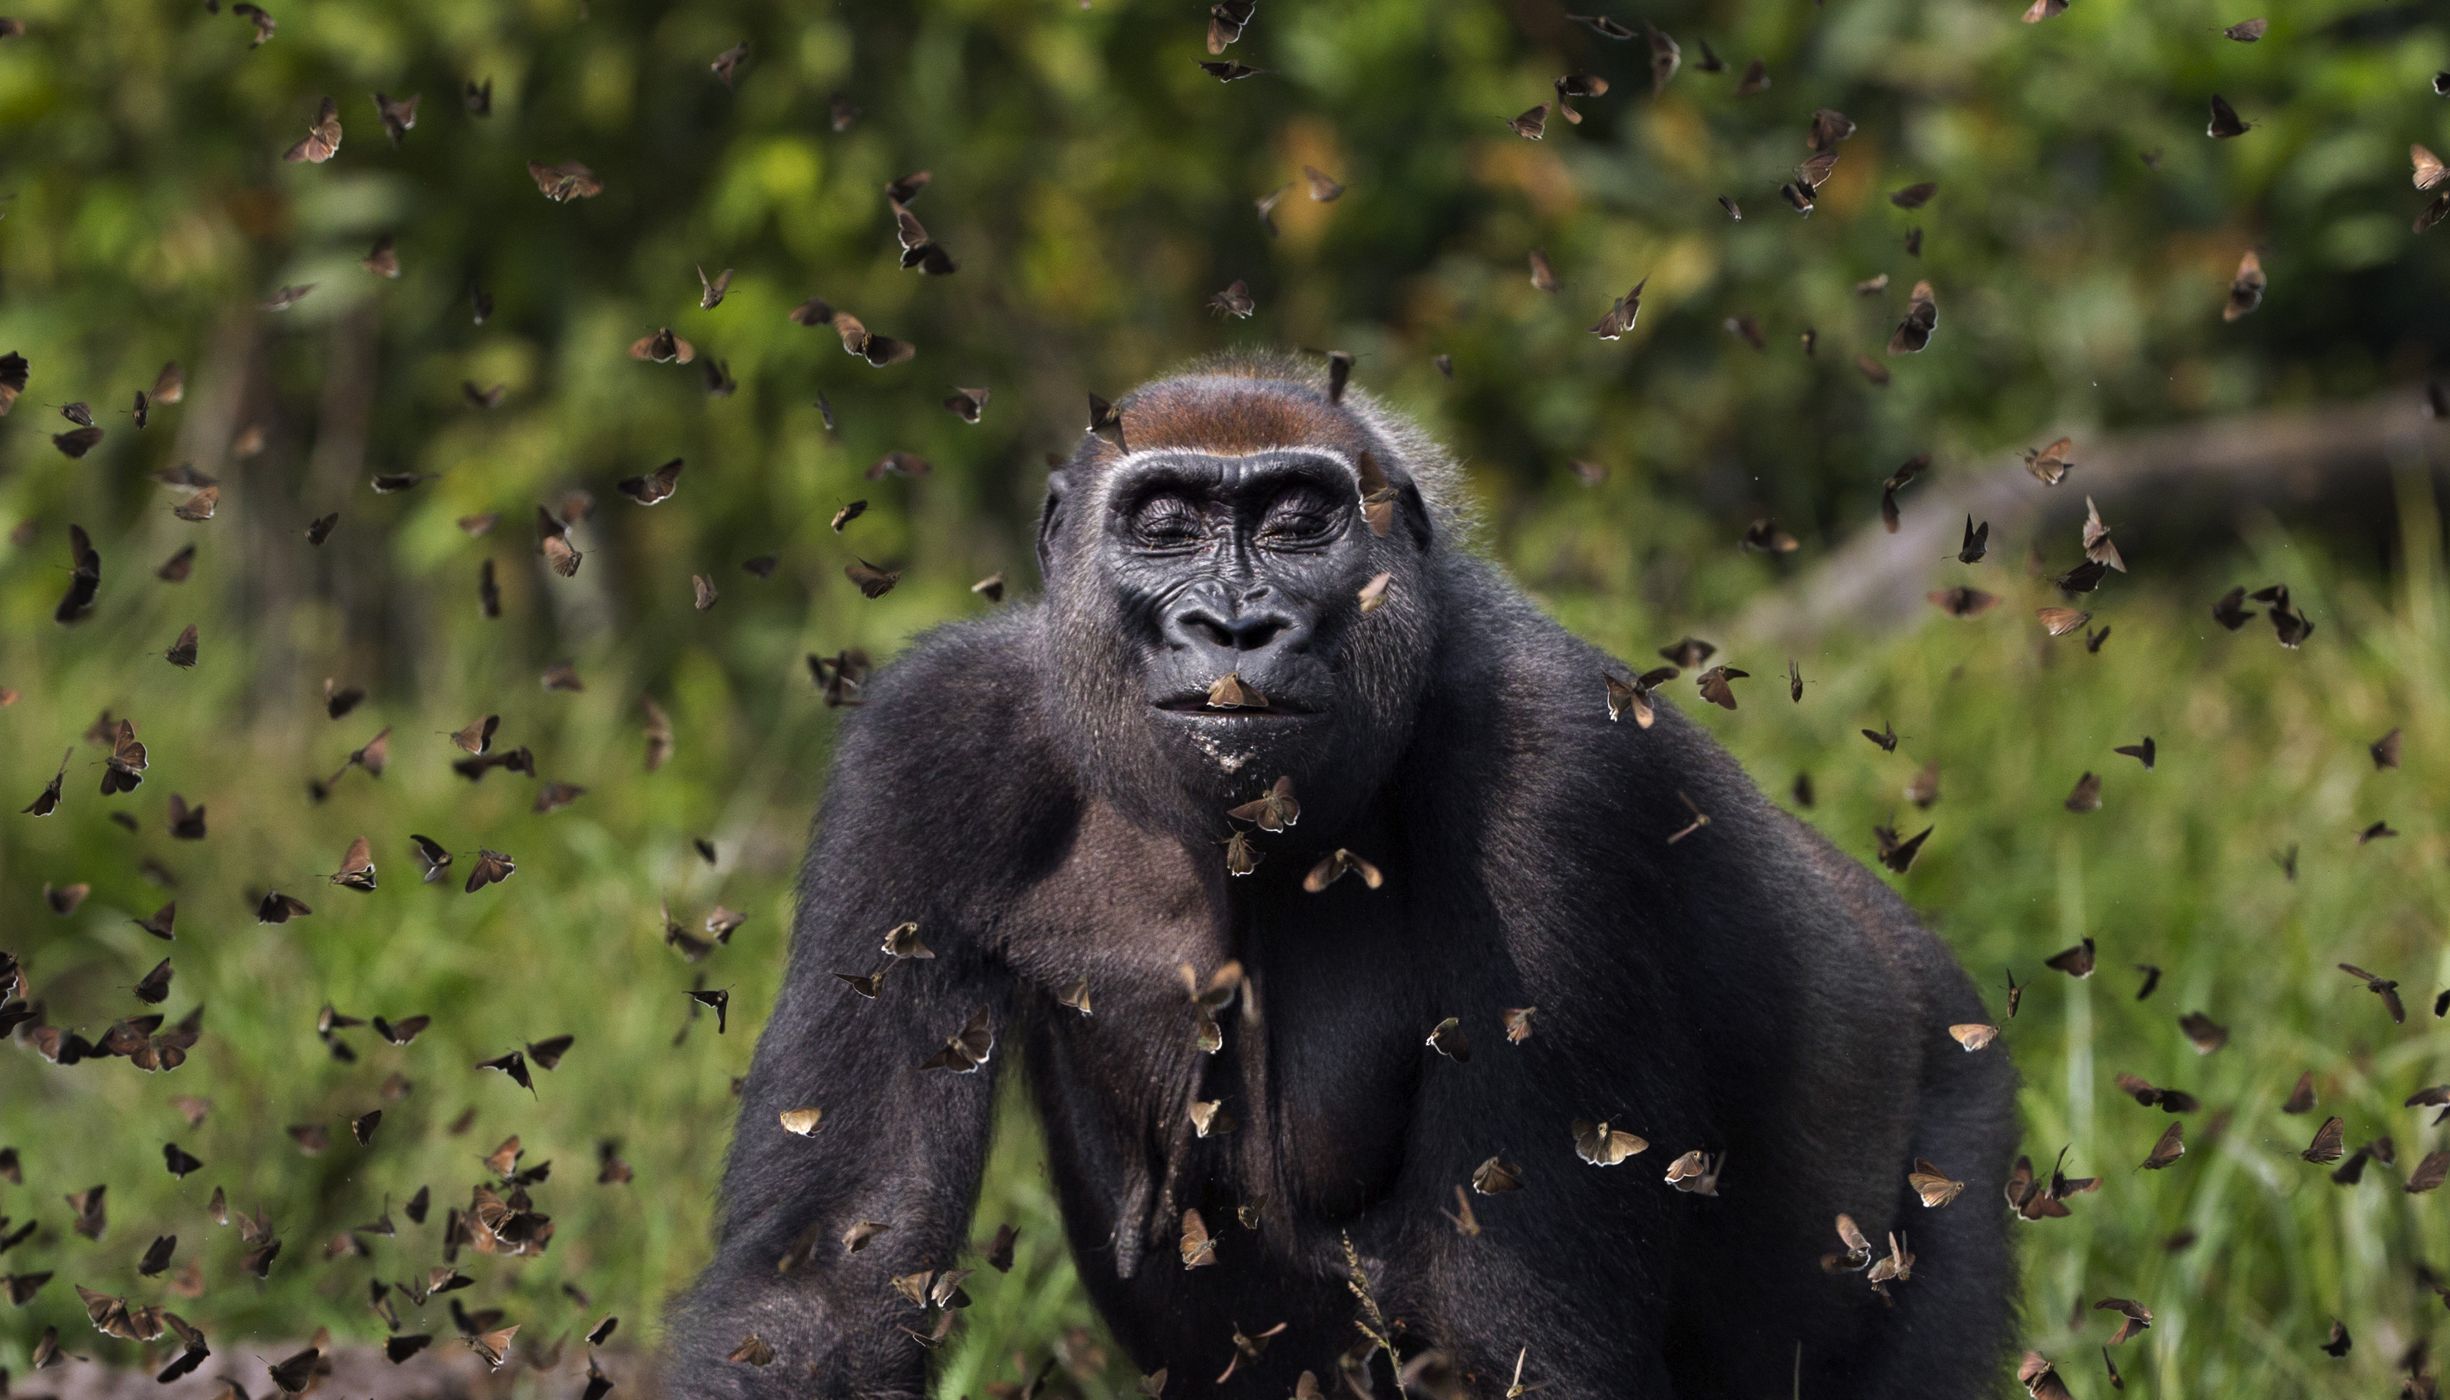 Un gorila con mirada serena caminando entre decenas de mariposas